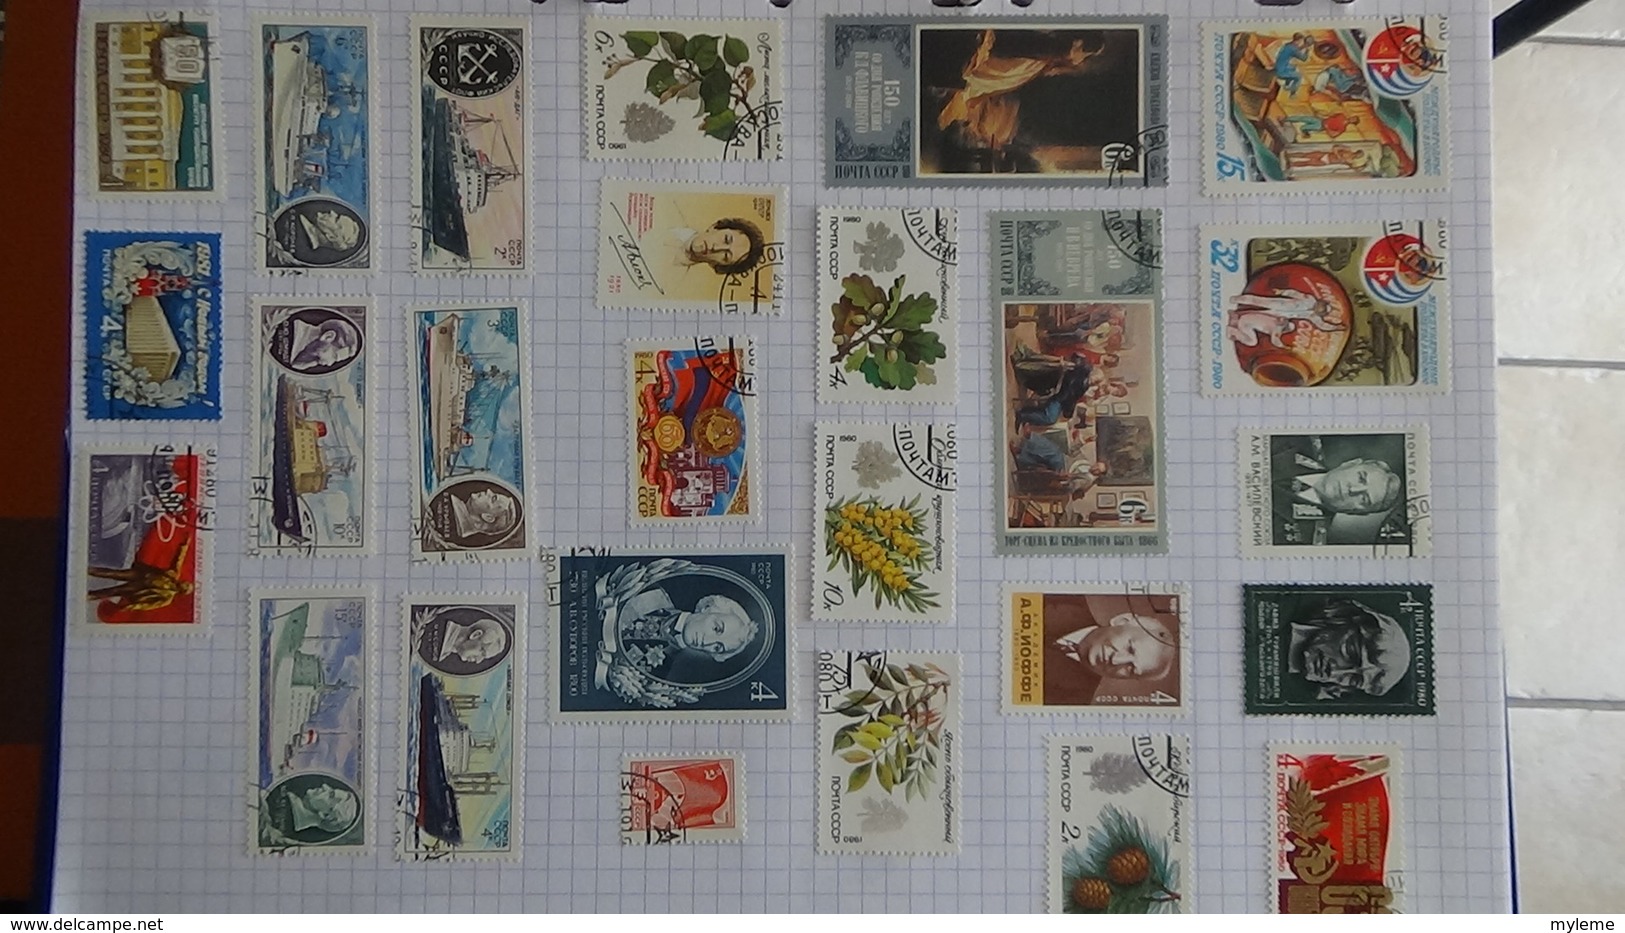 B384 Collection timbres oblitérés et environ 200 blocs d'URSS. A saisir !!!